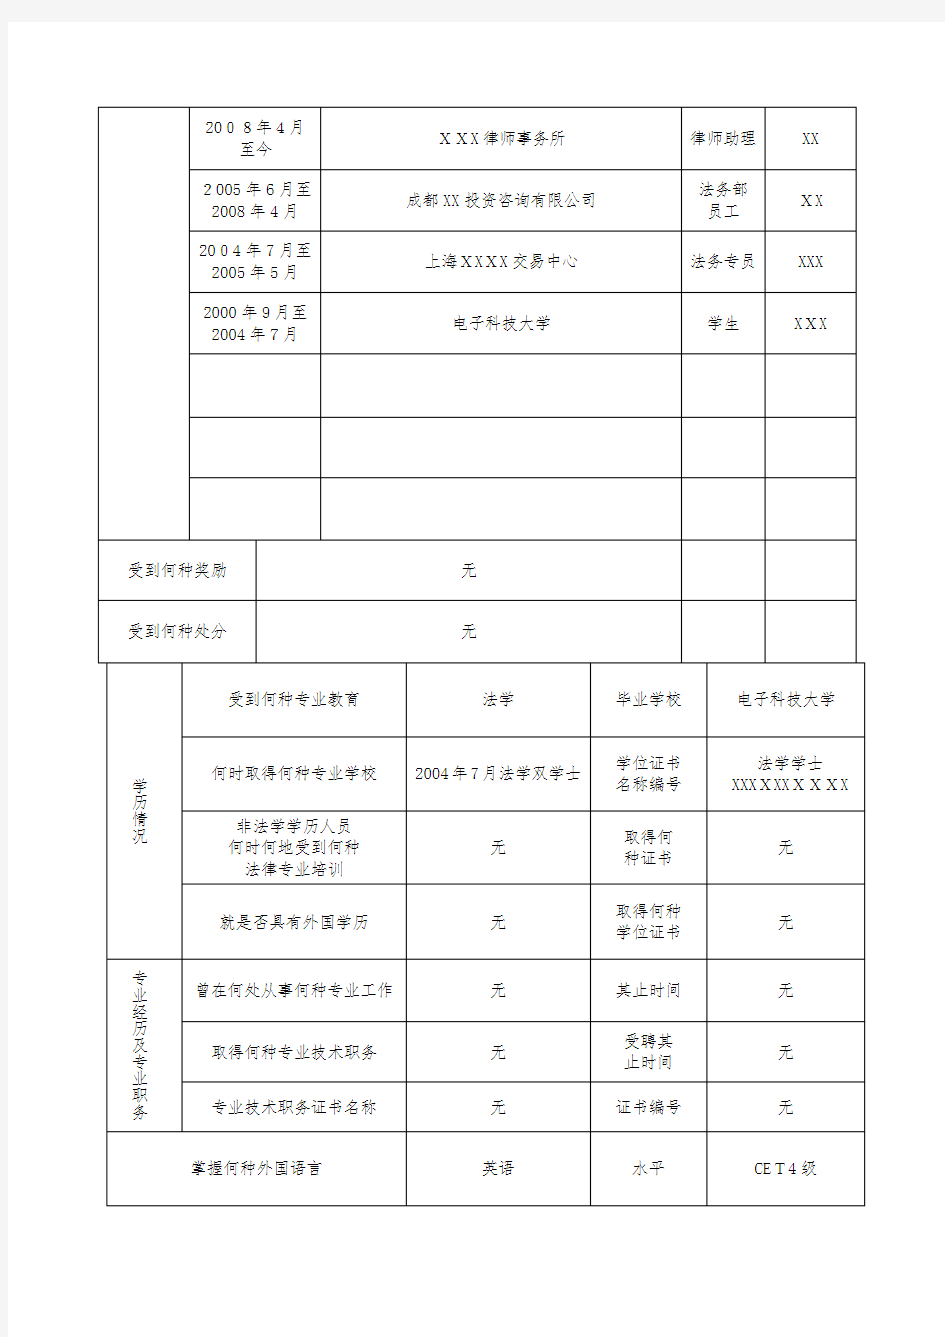 新版中华人民共和国律师执业登记表